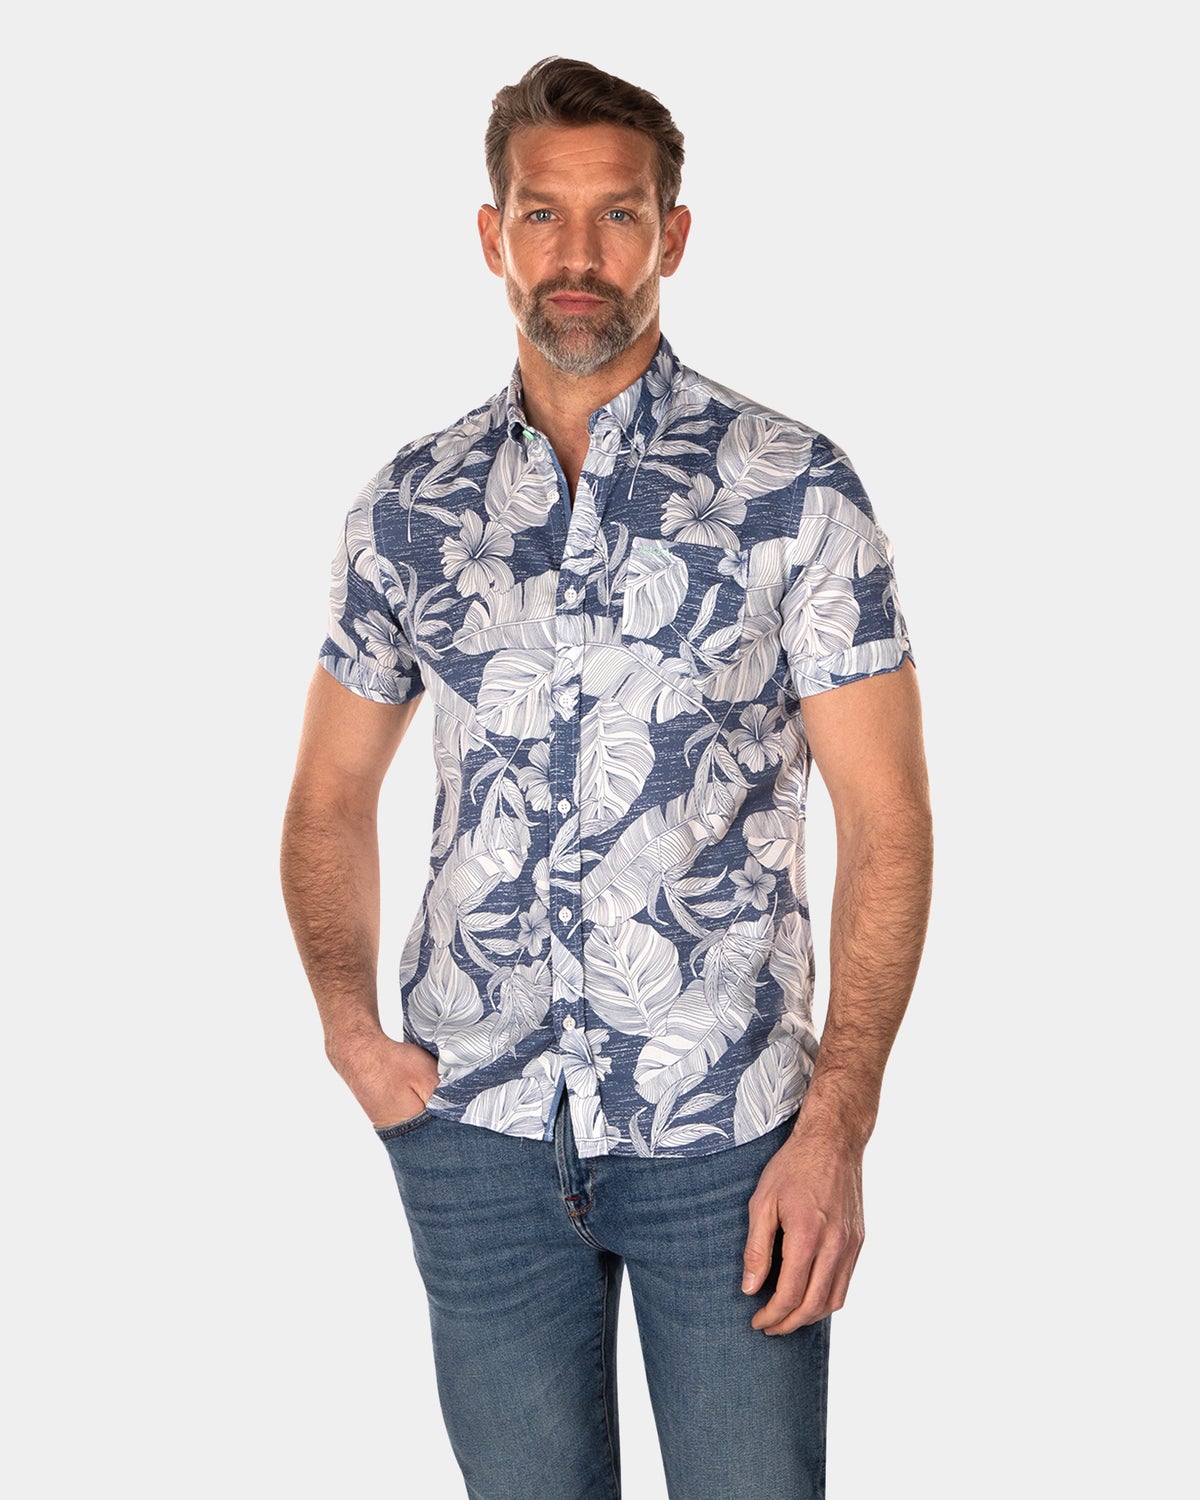 Flower printed short sleeved shirt  - Dusk Navy